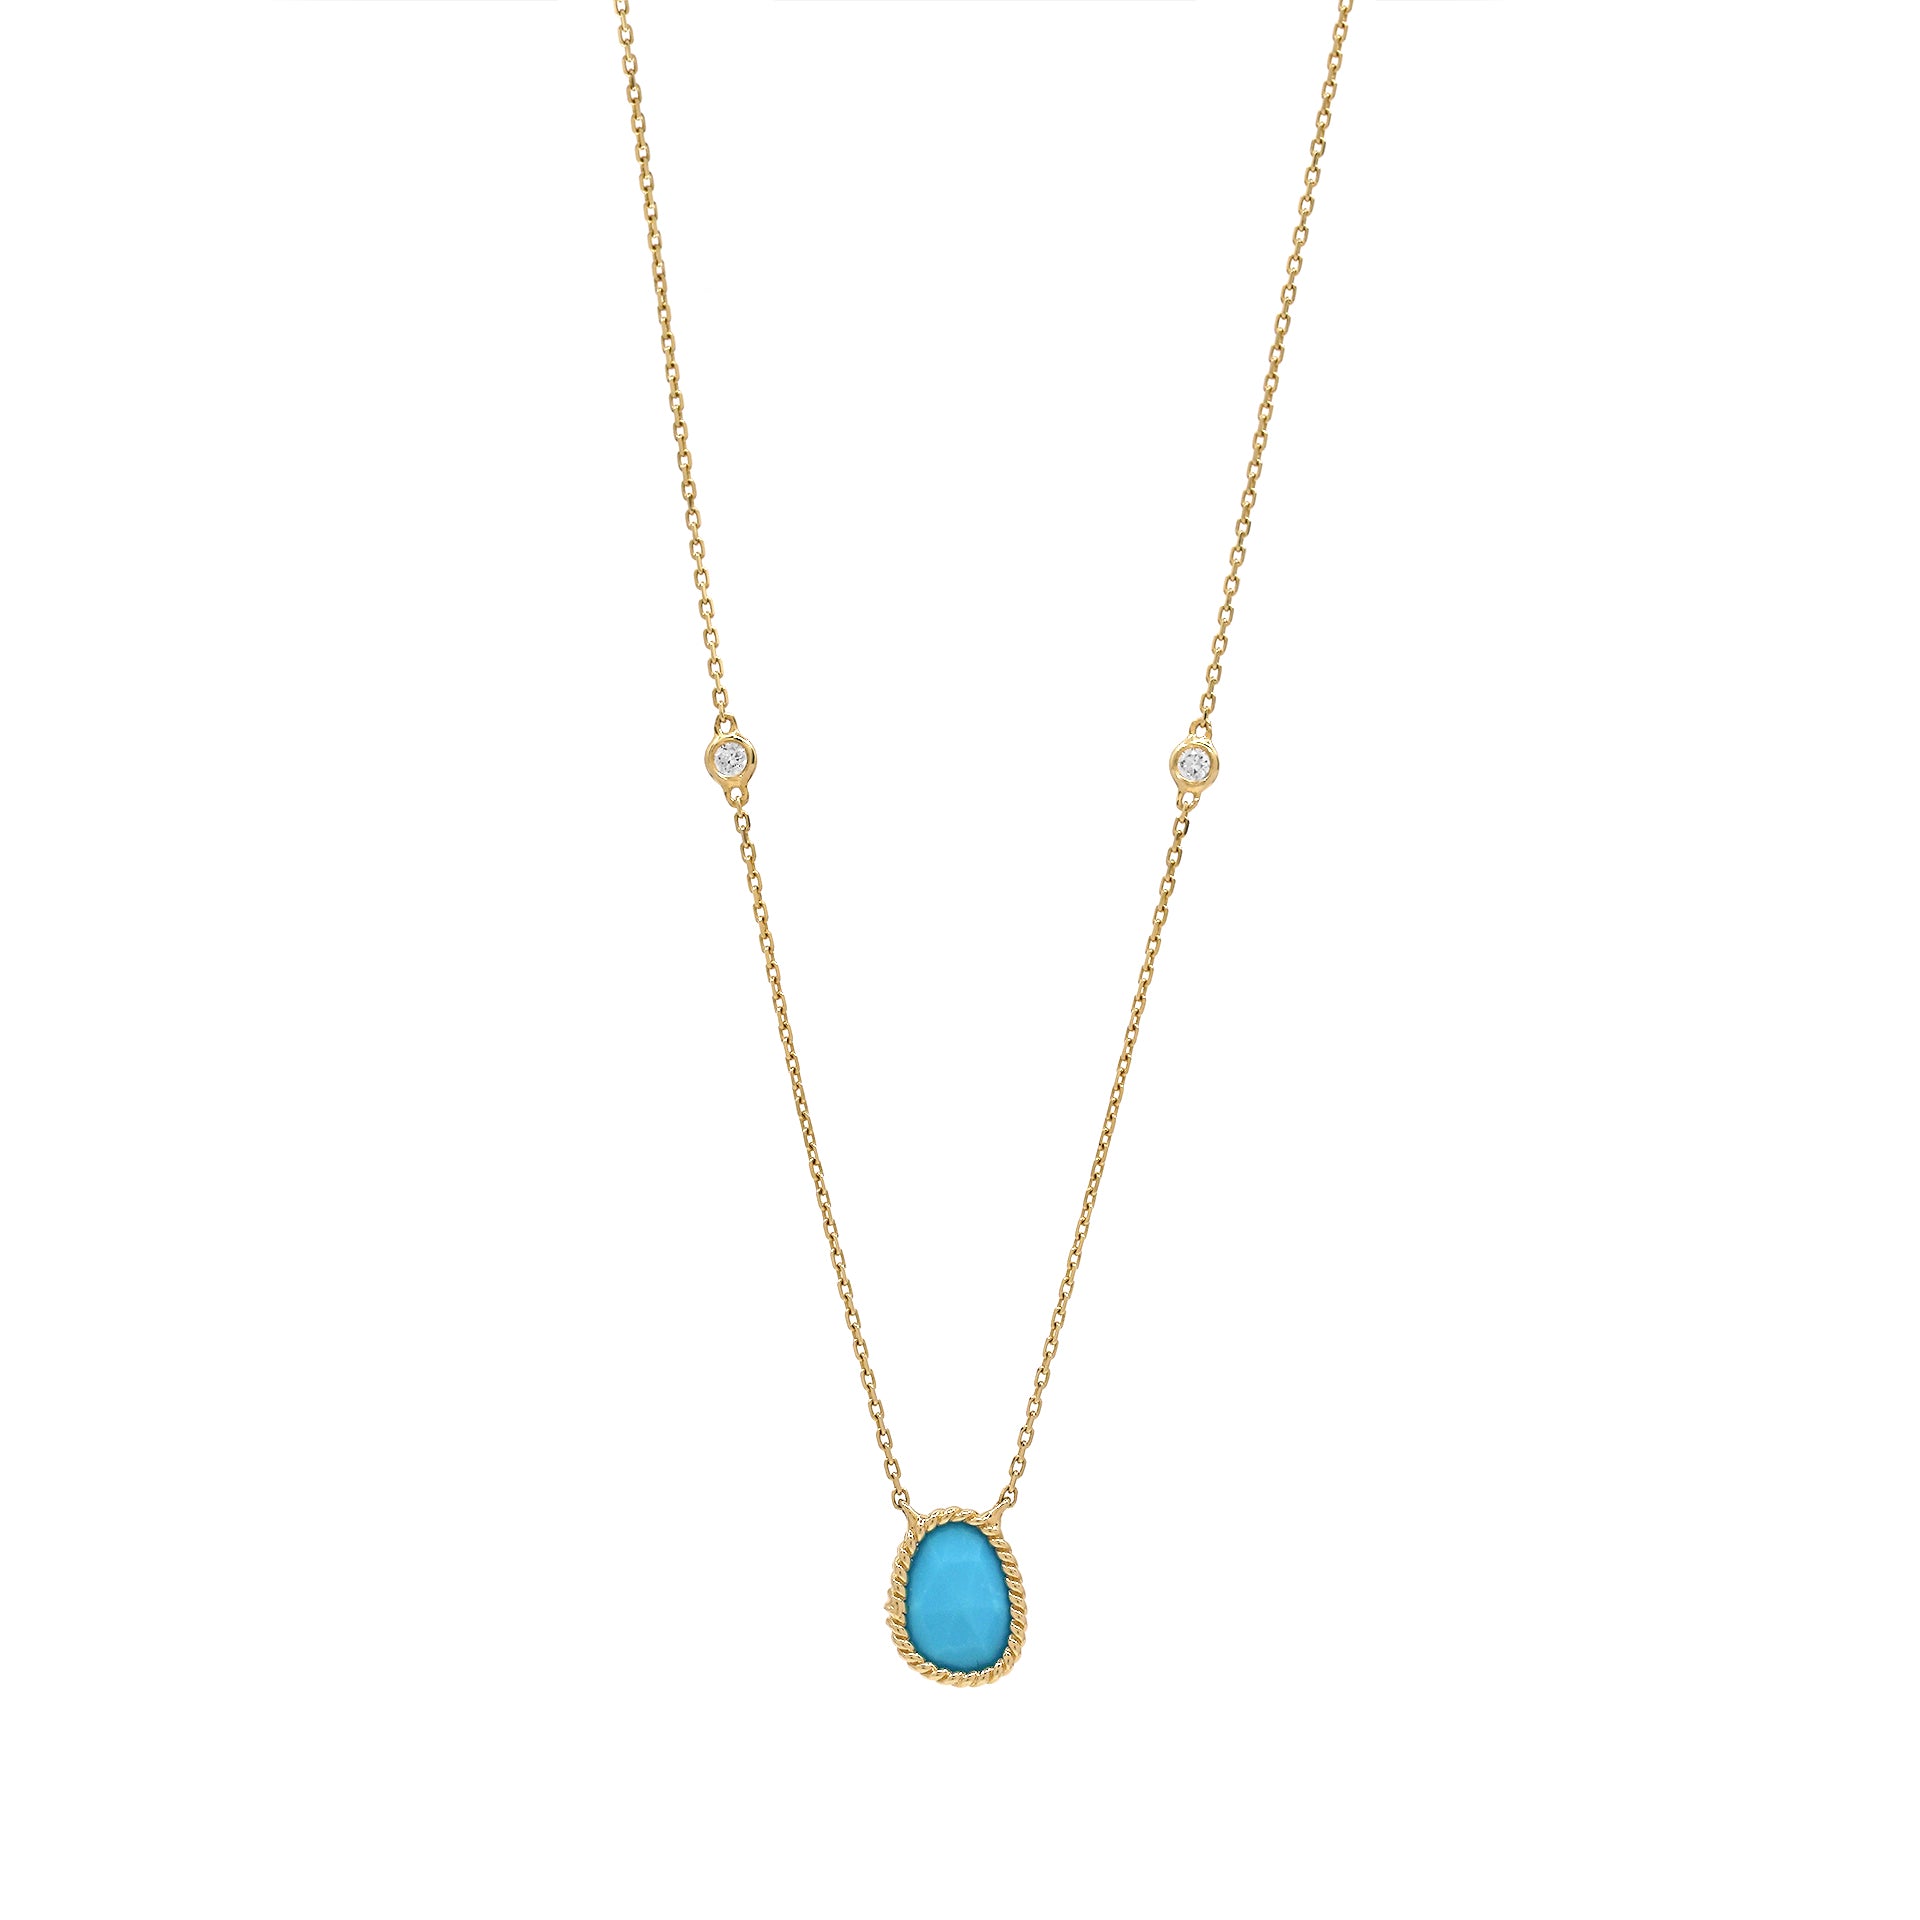 Nina Mariner Turquoise Pendant Necklace with Diamonds